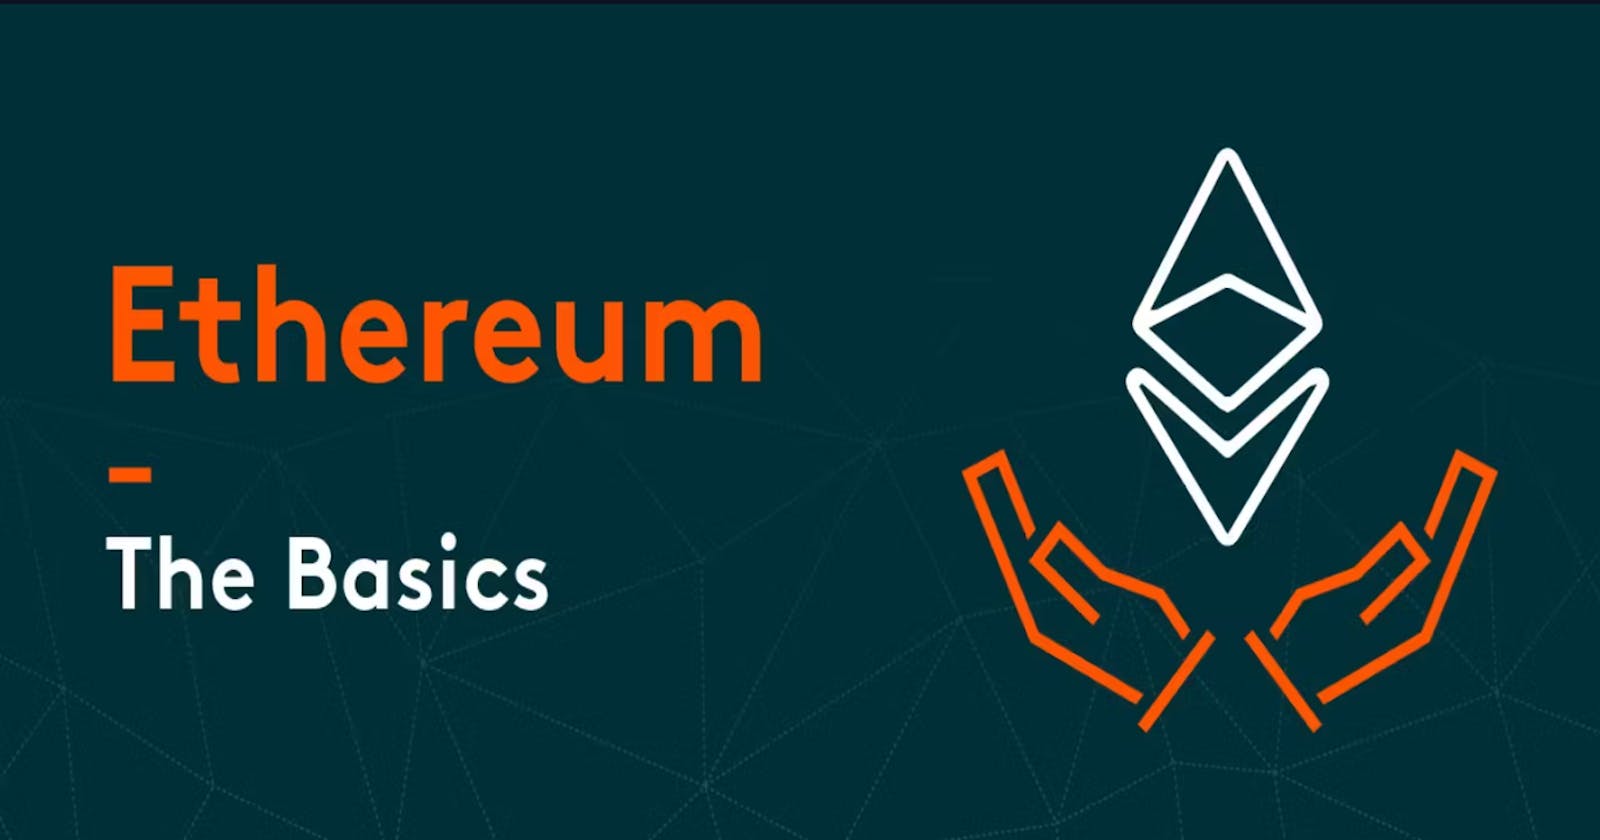 Ethereum - The Basics